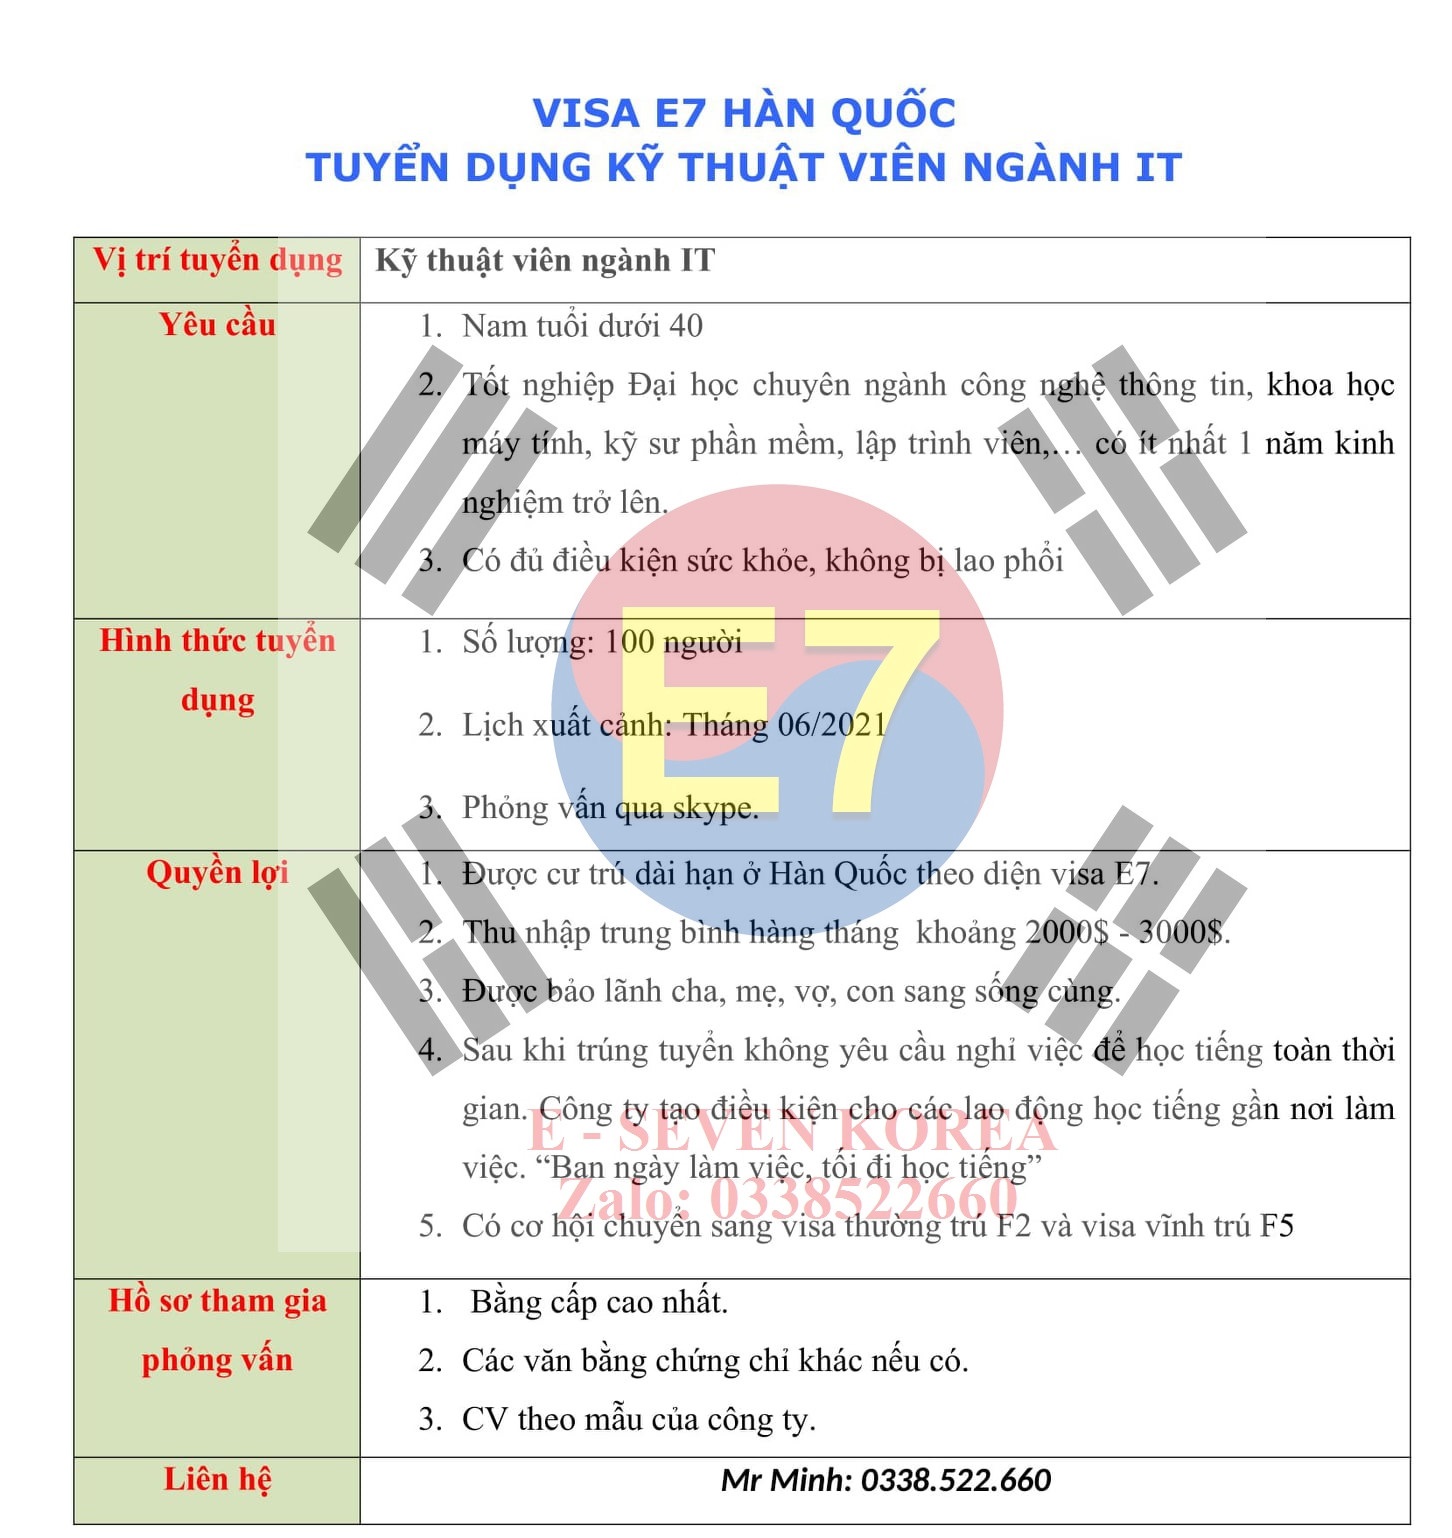 Thông báo tuyển dụng visa E7 Hàn Quốc ngành IT